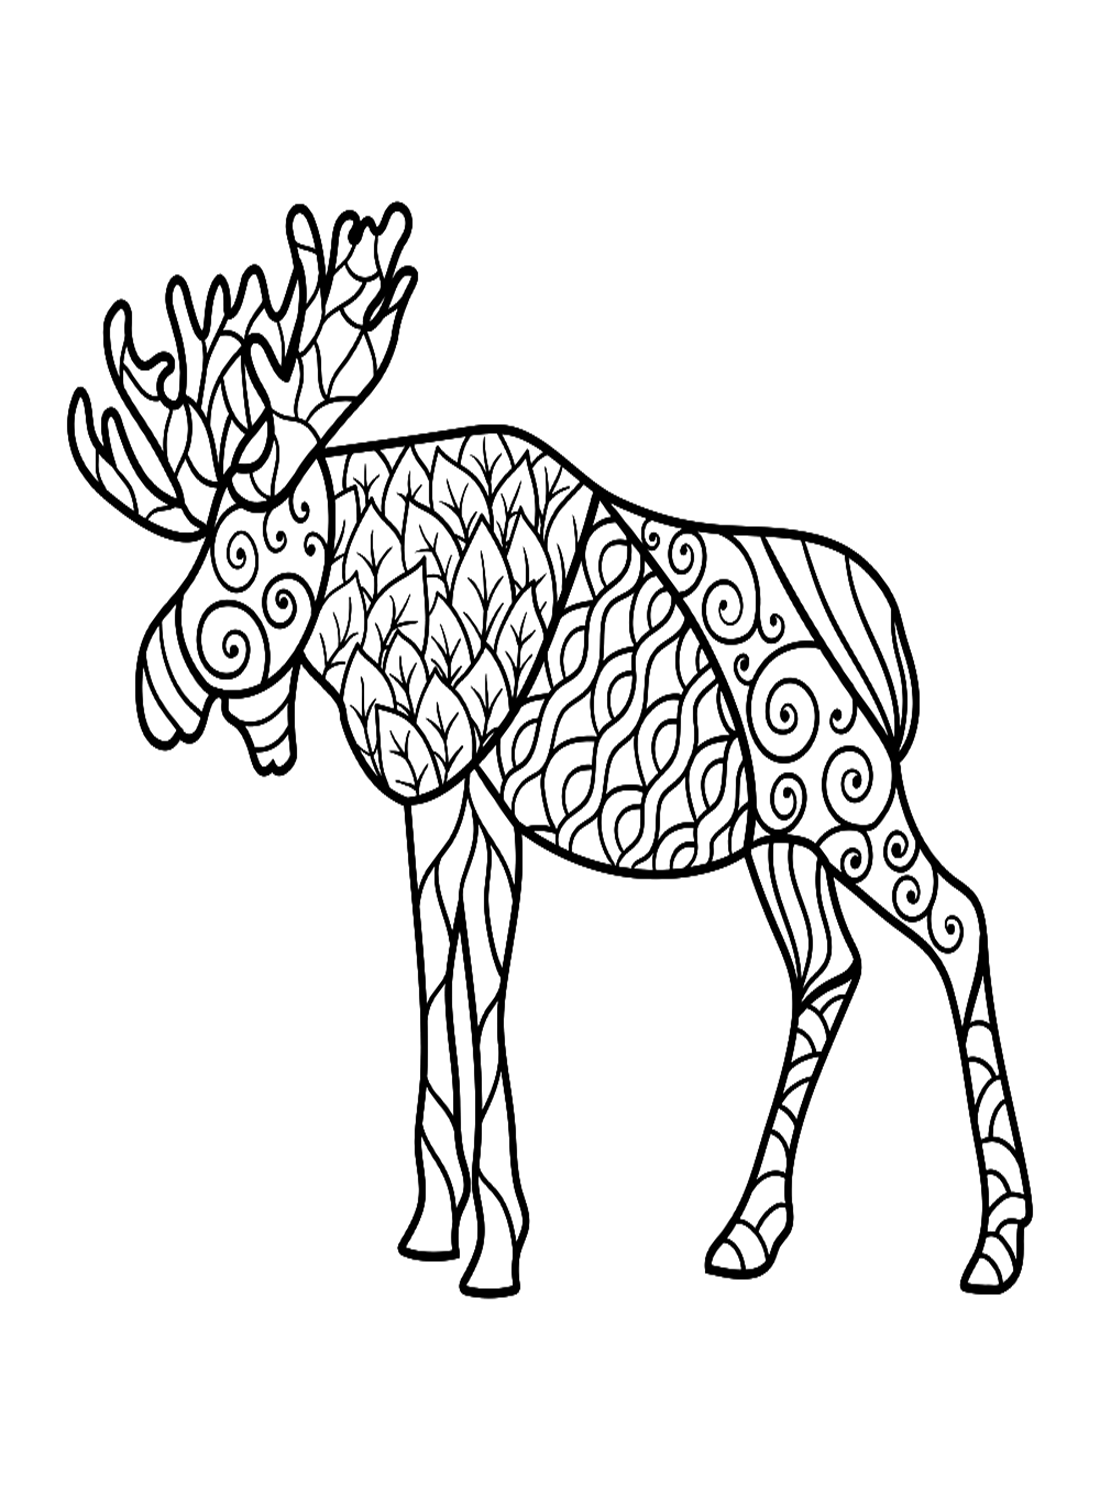 Alce en estilo Zentangle de Elk